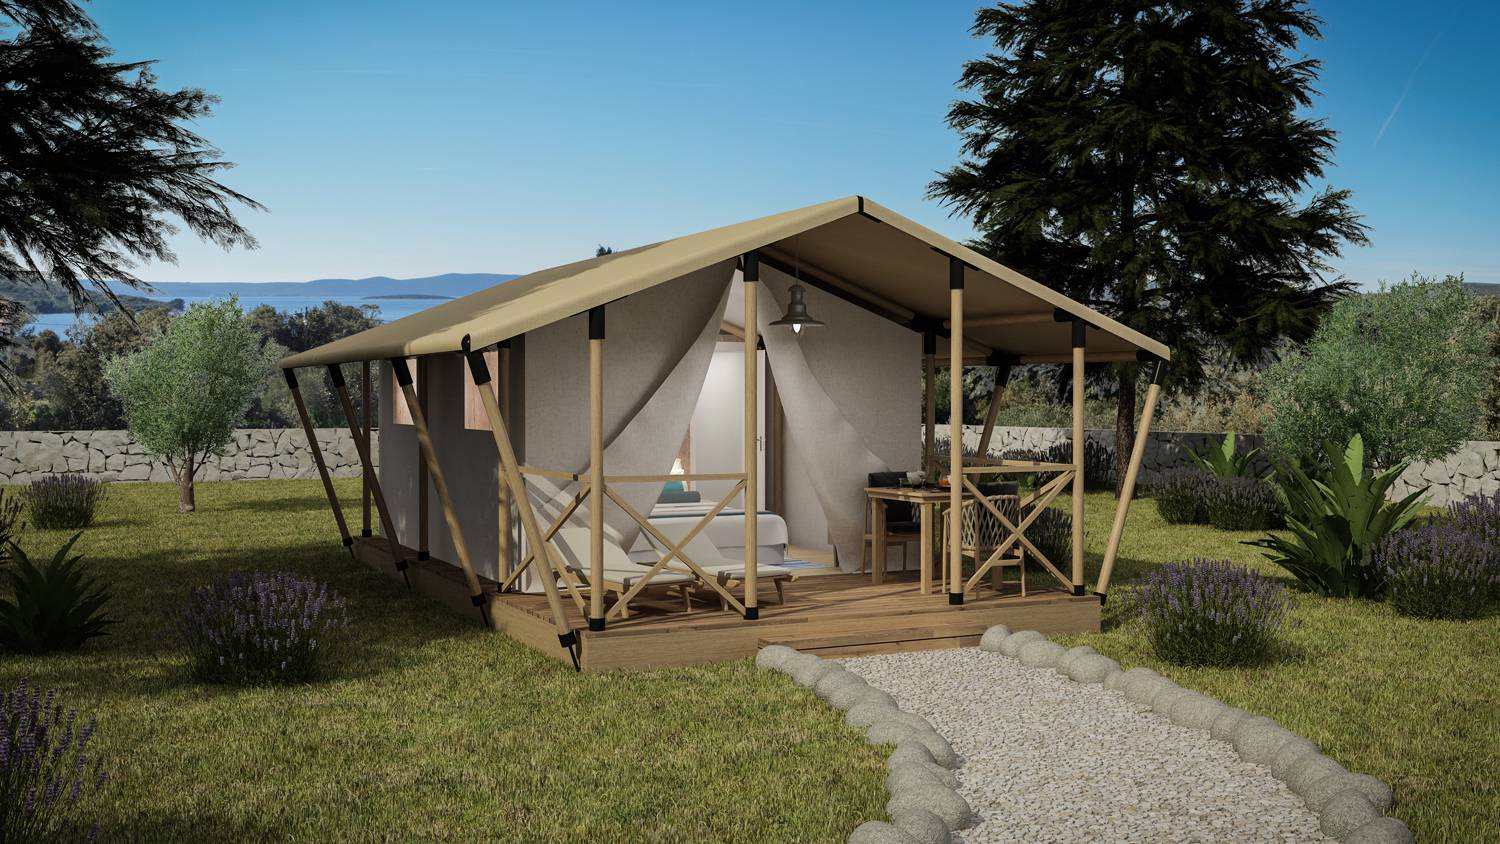 Budite spremni za sezonu – kupite povoljnije glamping šatore i drvene kućice